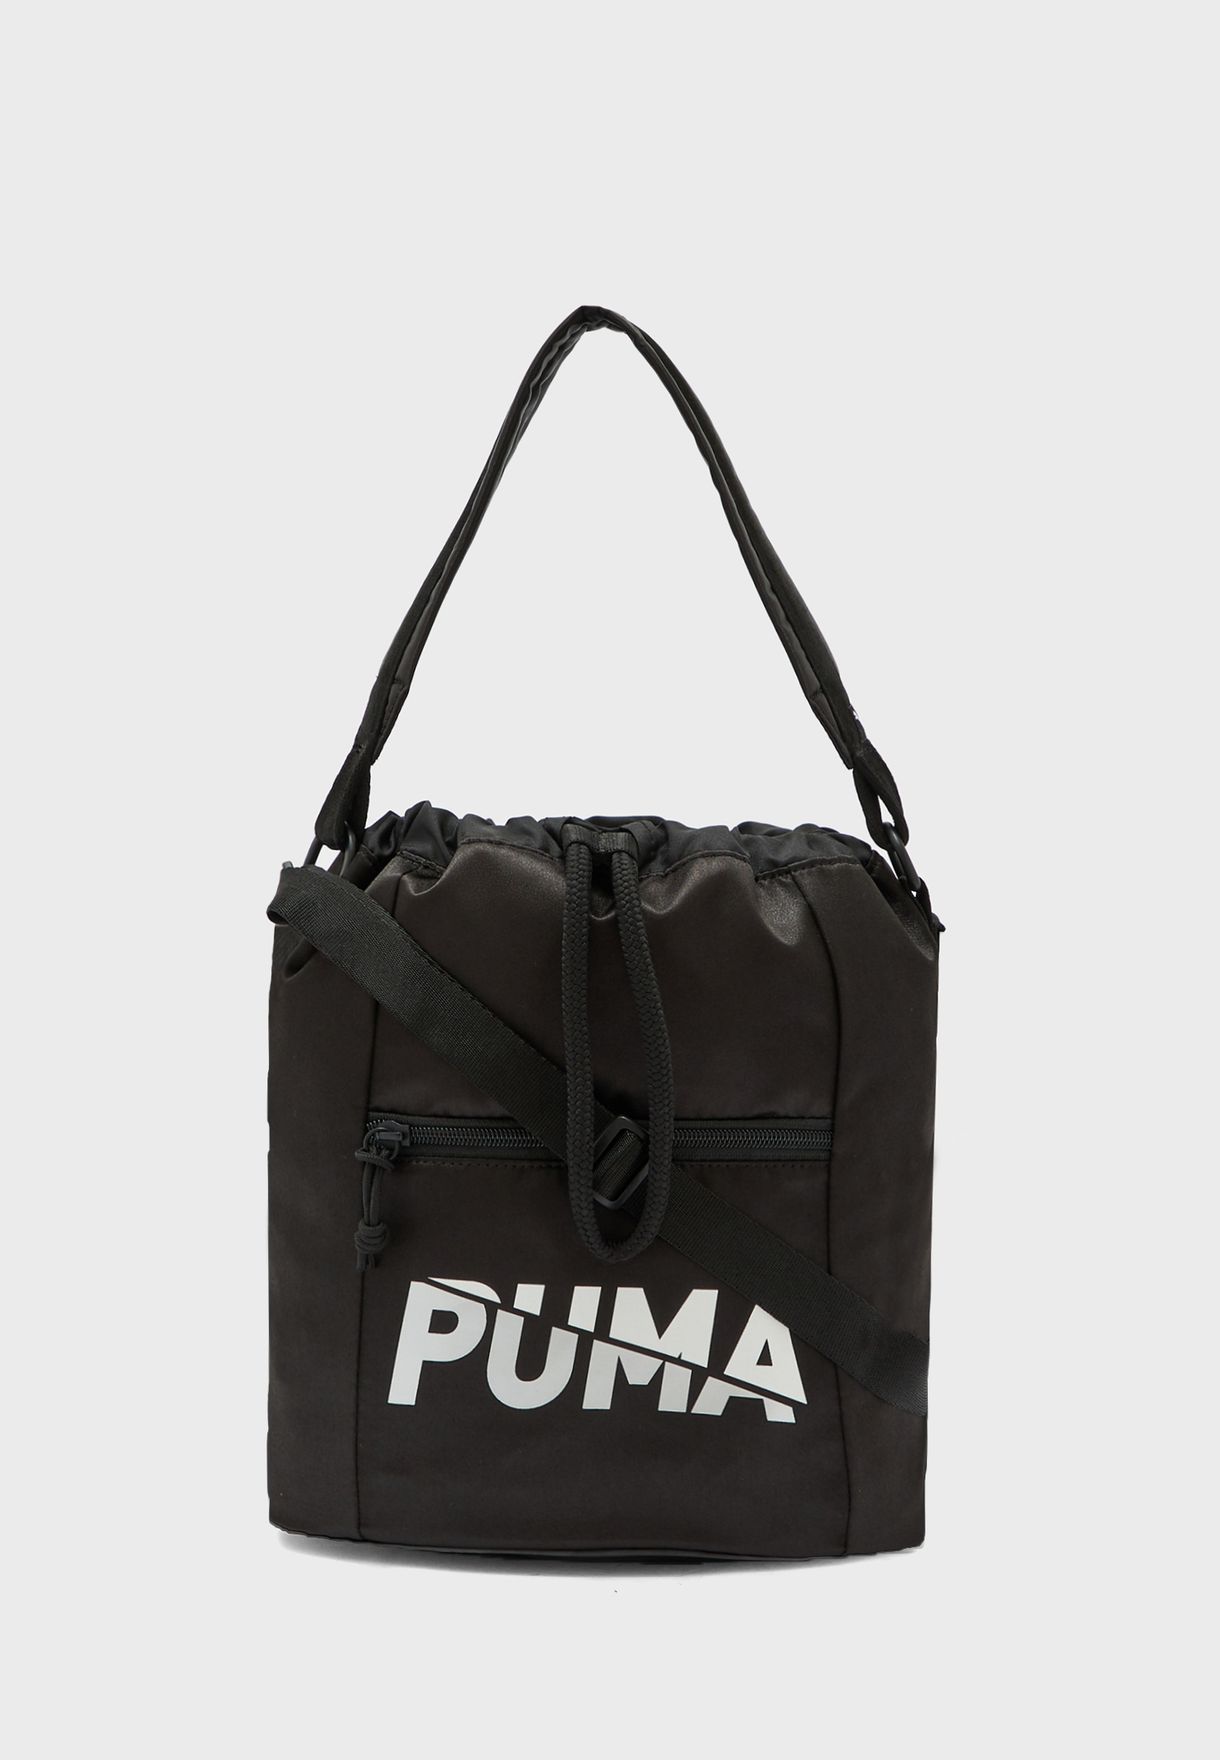 where to buy puma bags